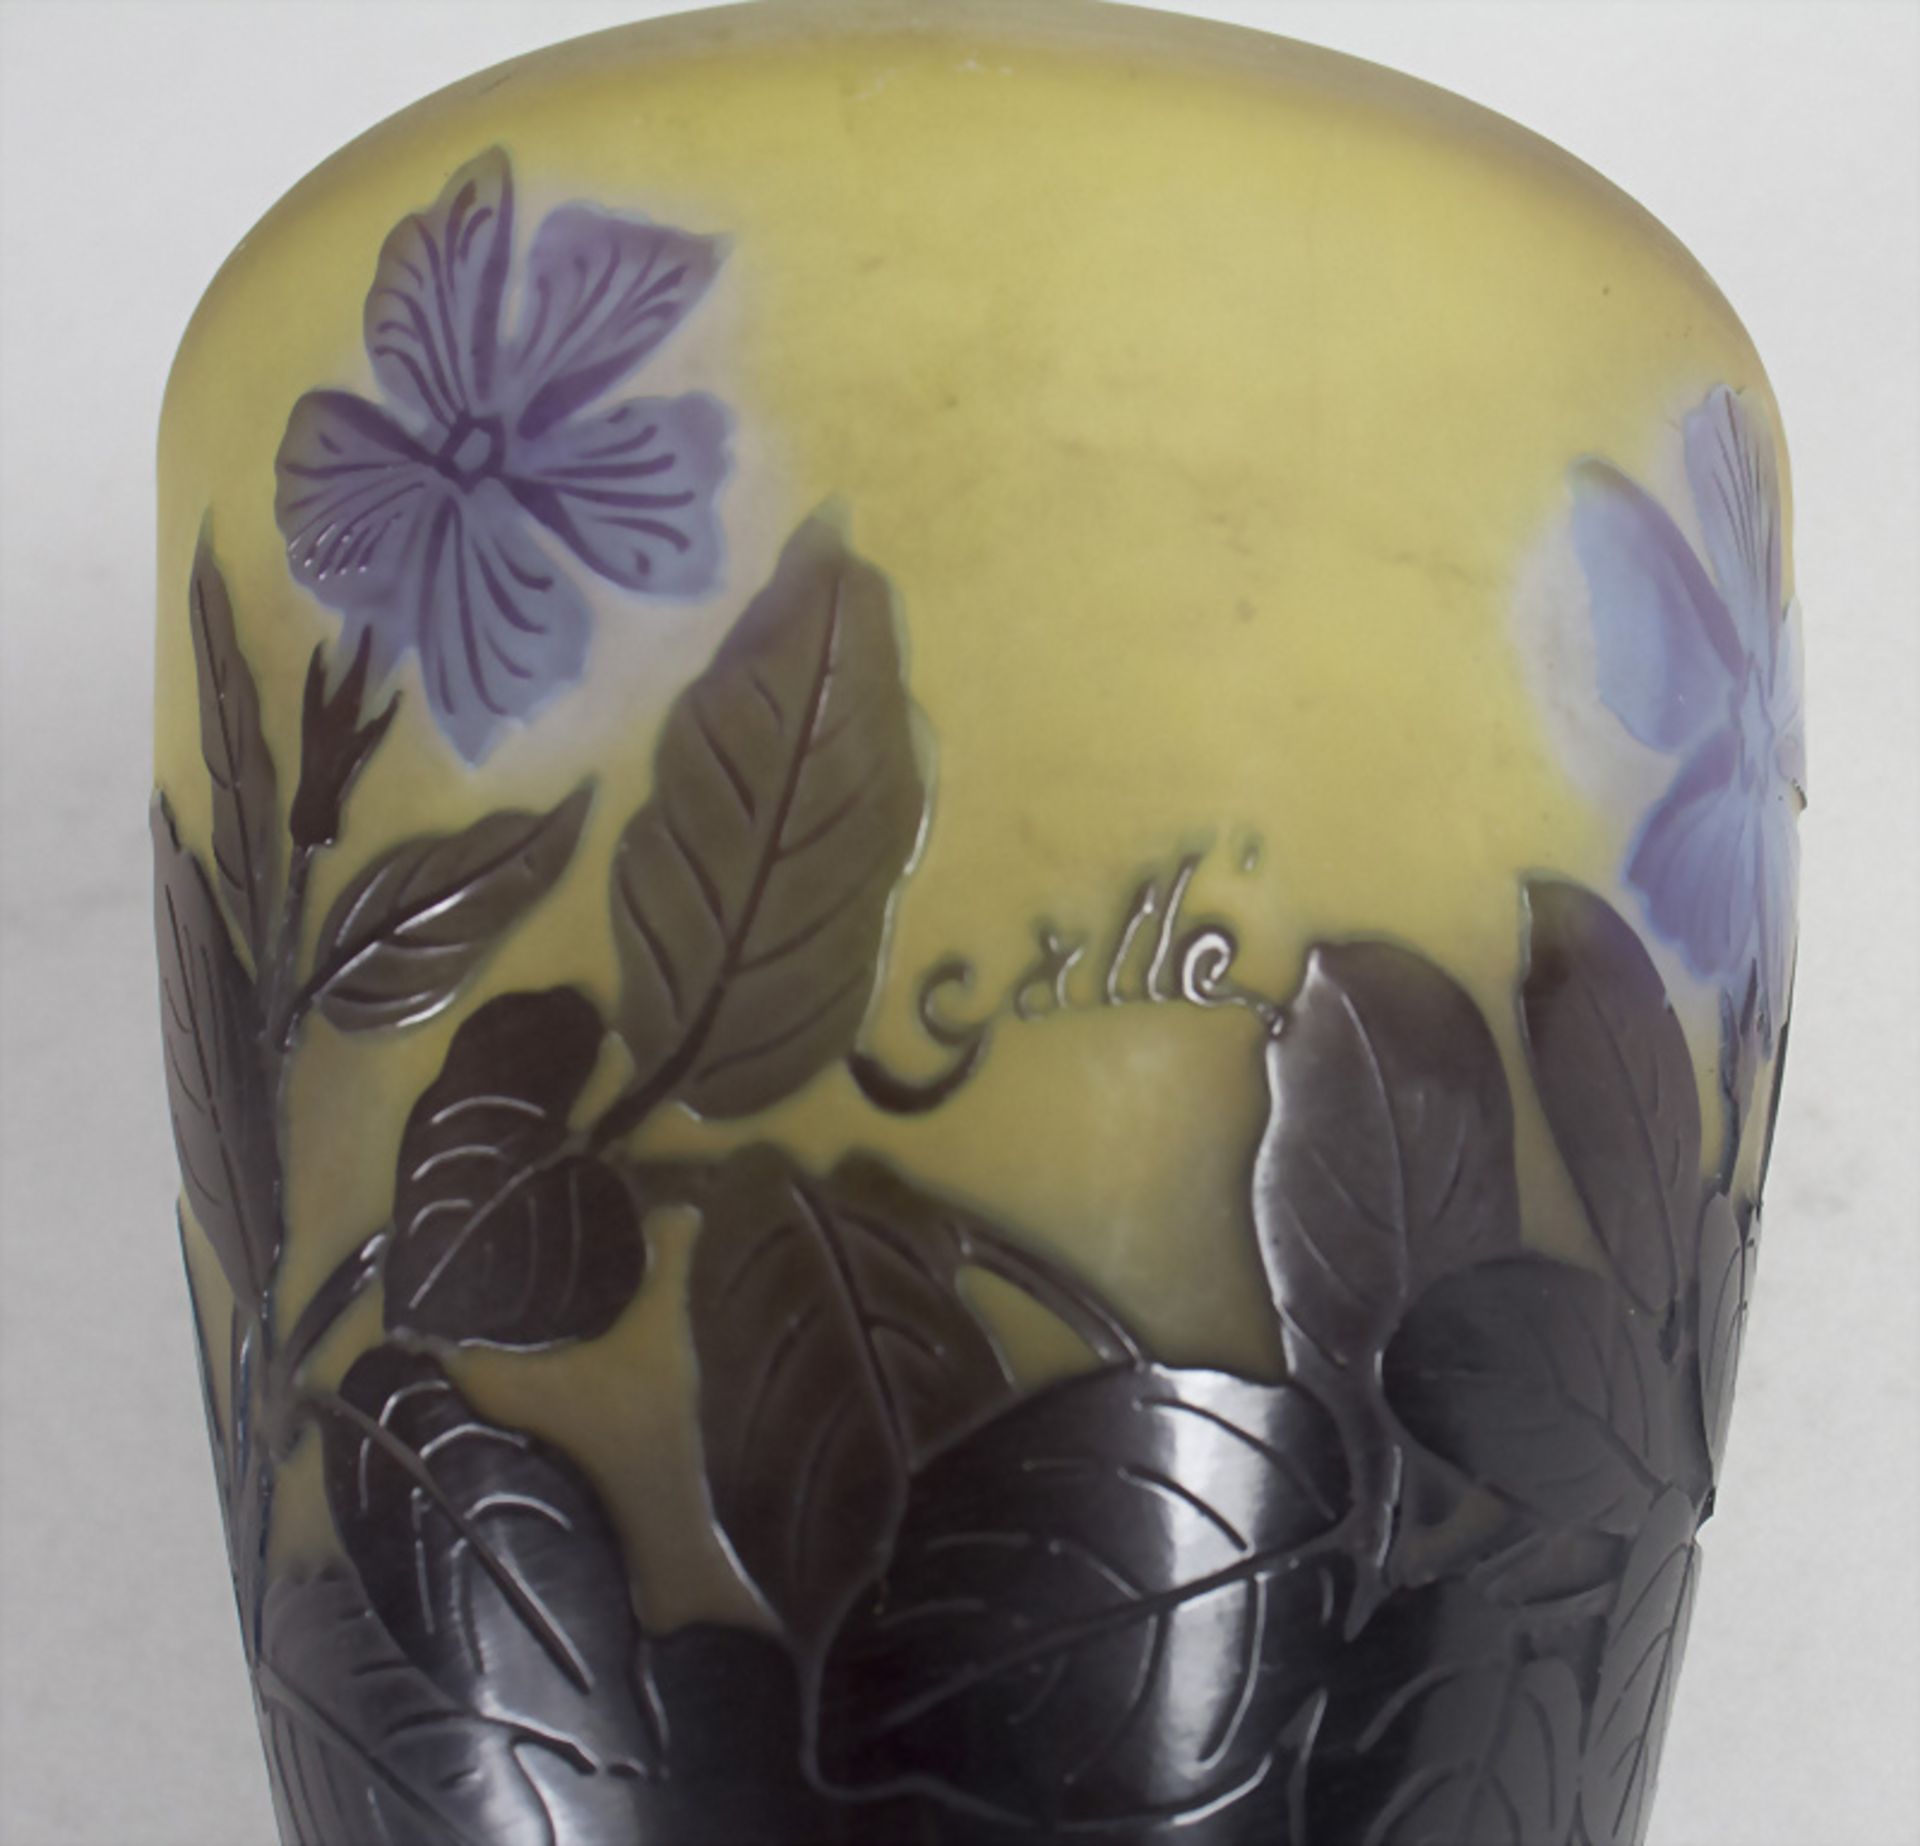 Jugendstil Vase mit Clematis / An Art Nouveau cameo glass vase with clematis, Emile Gallé, ... - Image 4 of 5